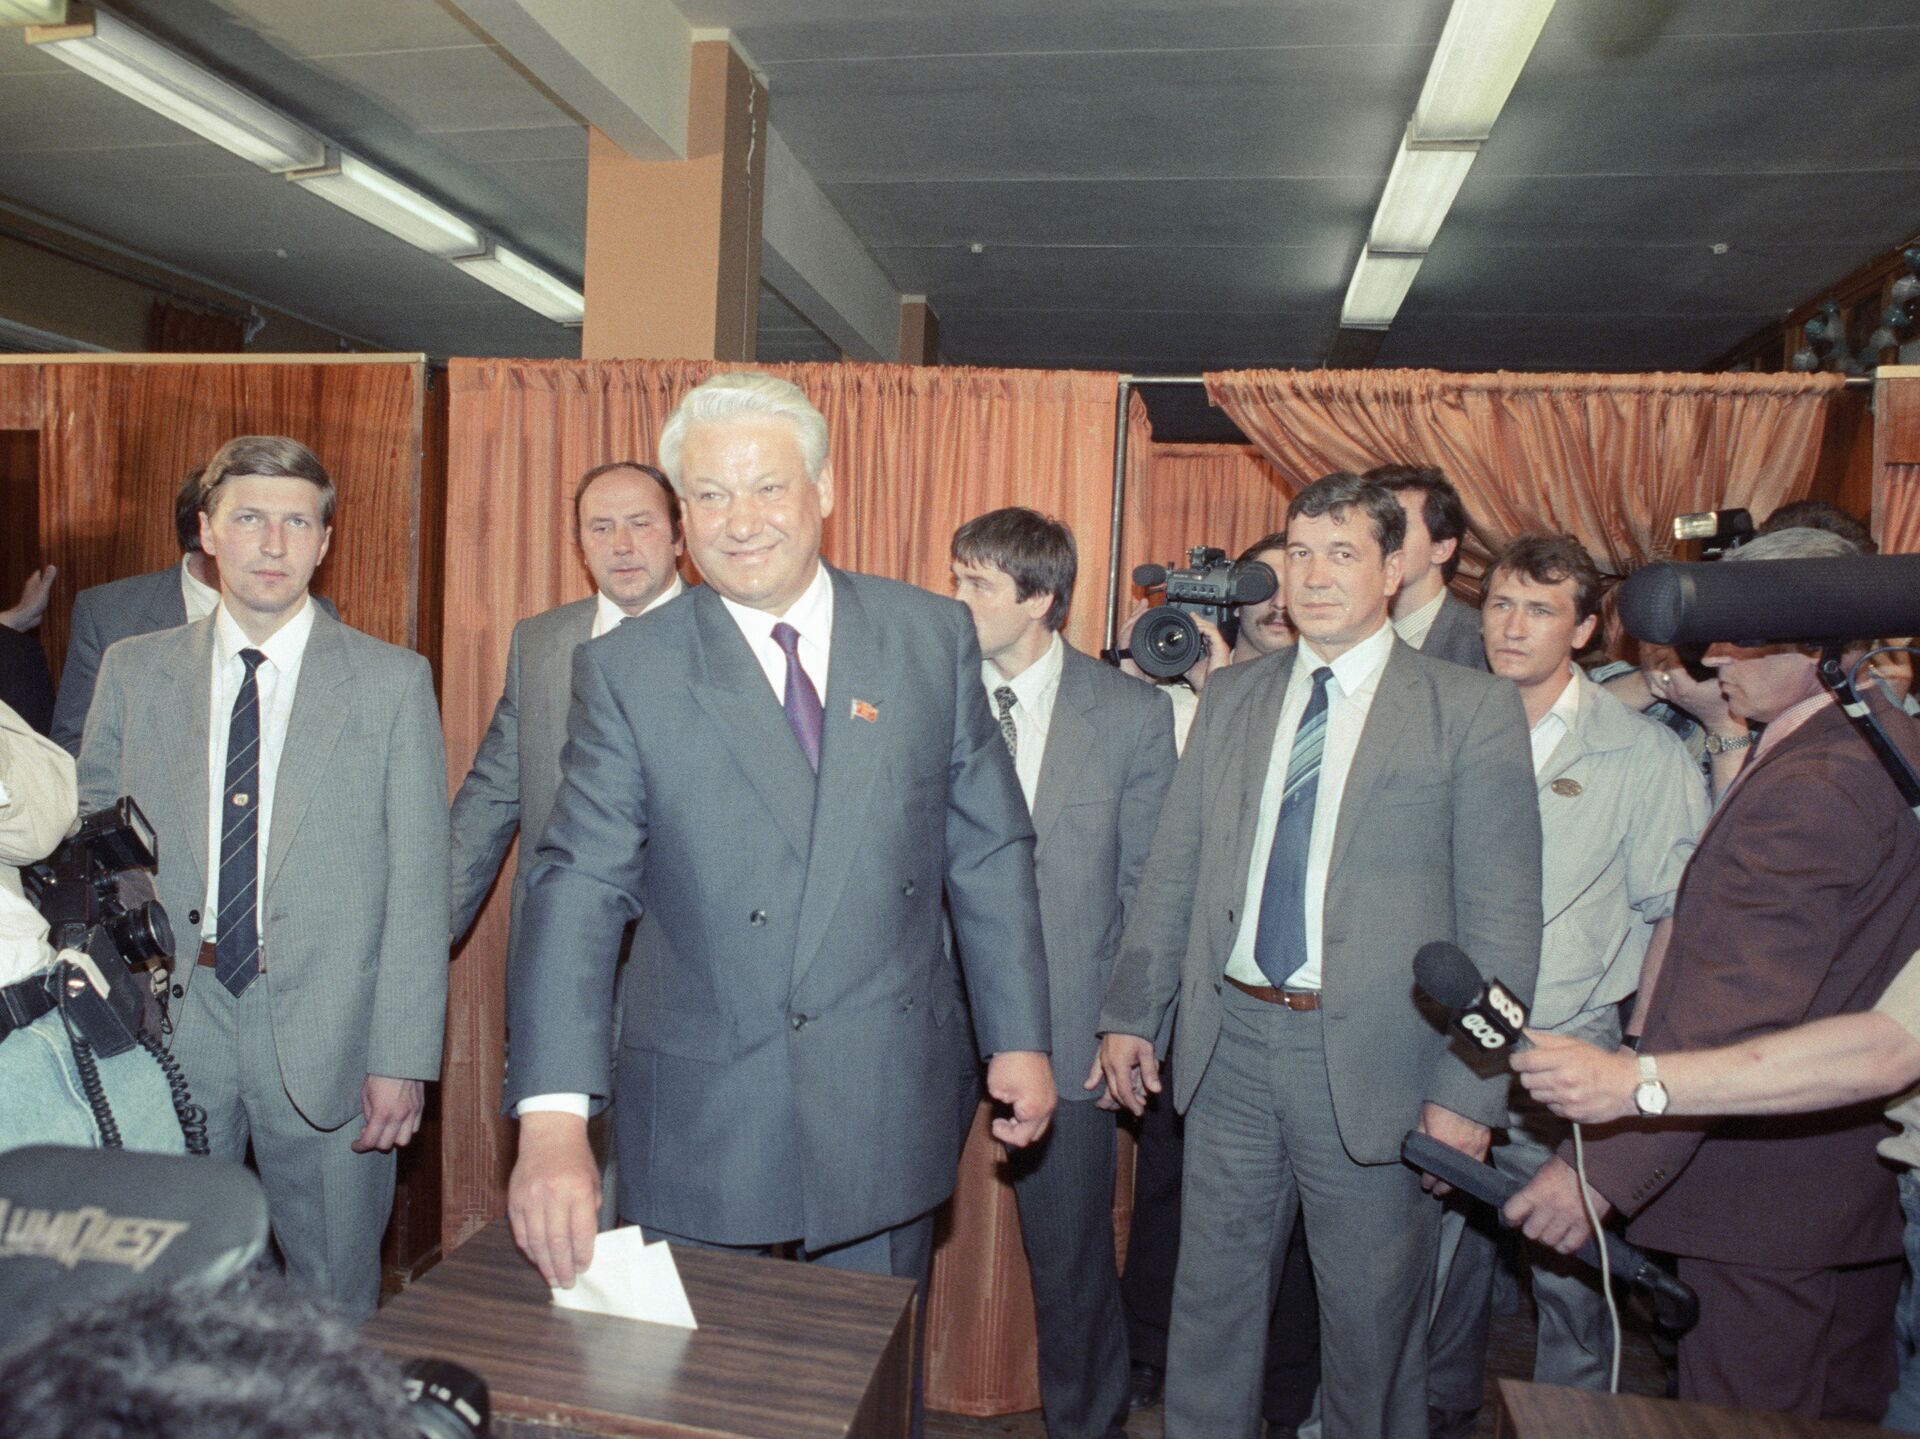 Риа новости выборы президента. 12 Июня 1991 г. - избрание первого президента РСФСР. Тулеев и Ельцин.